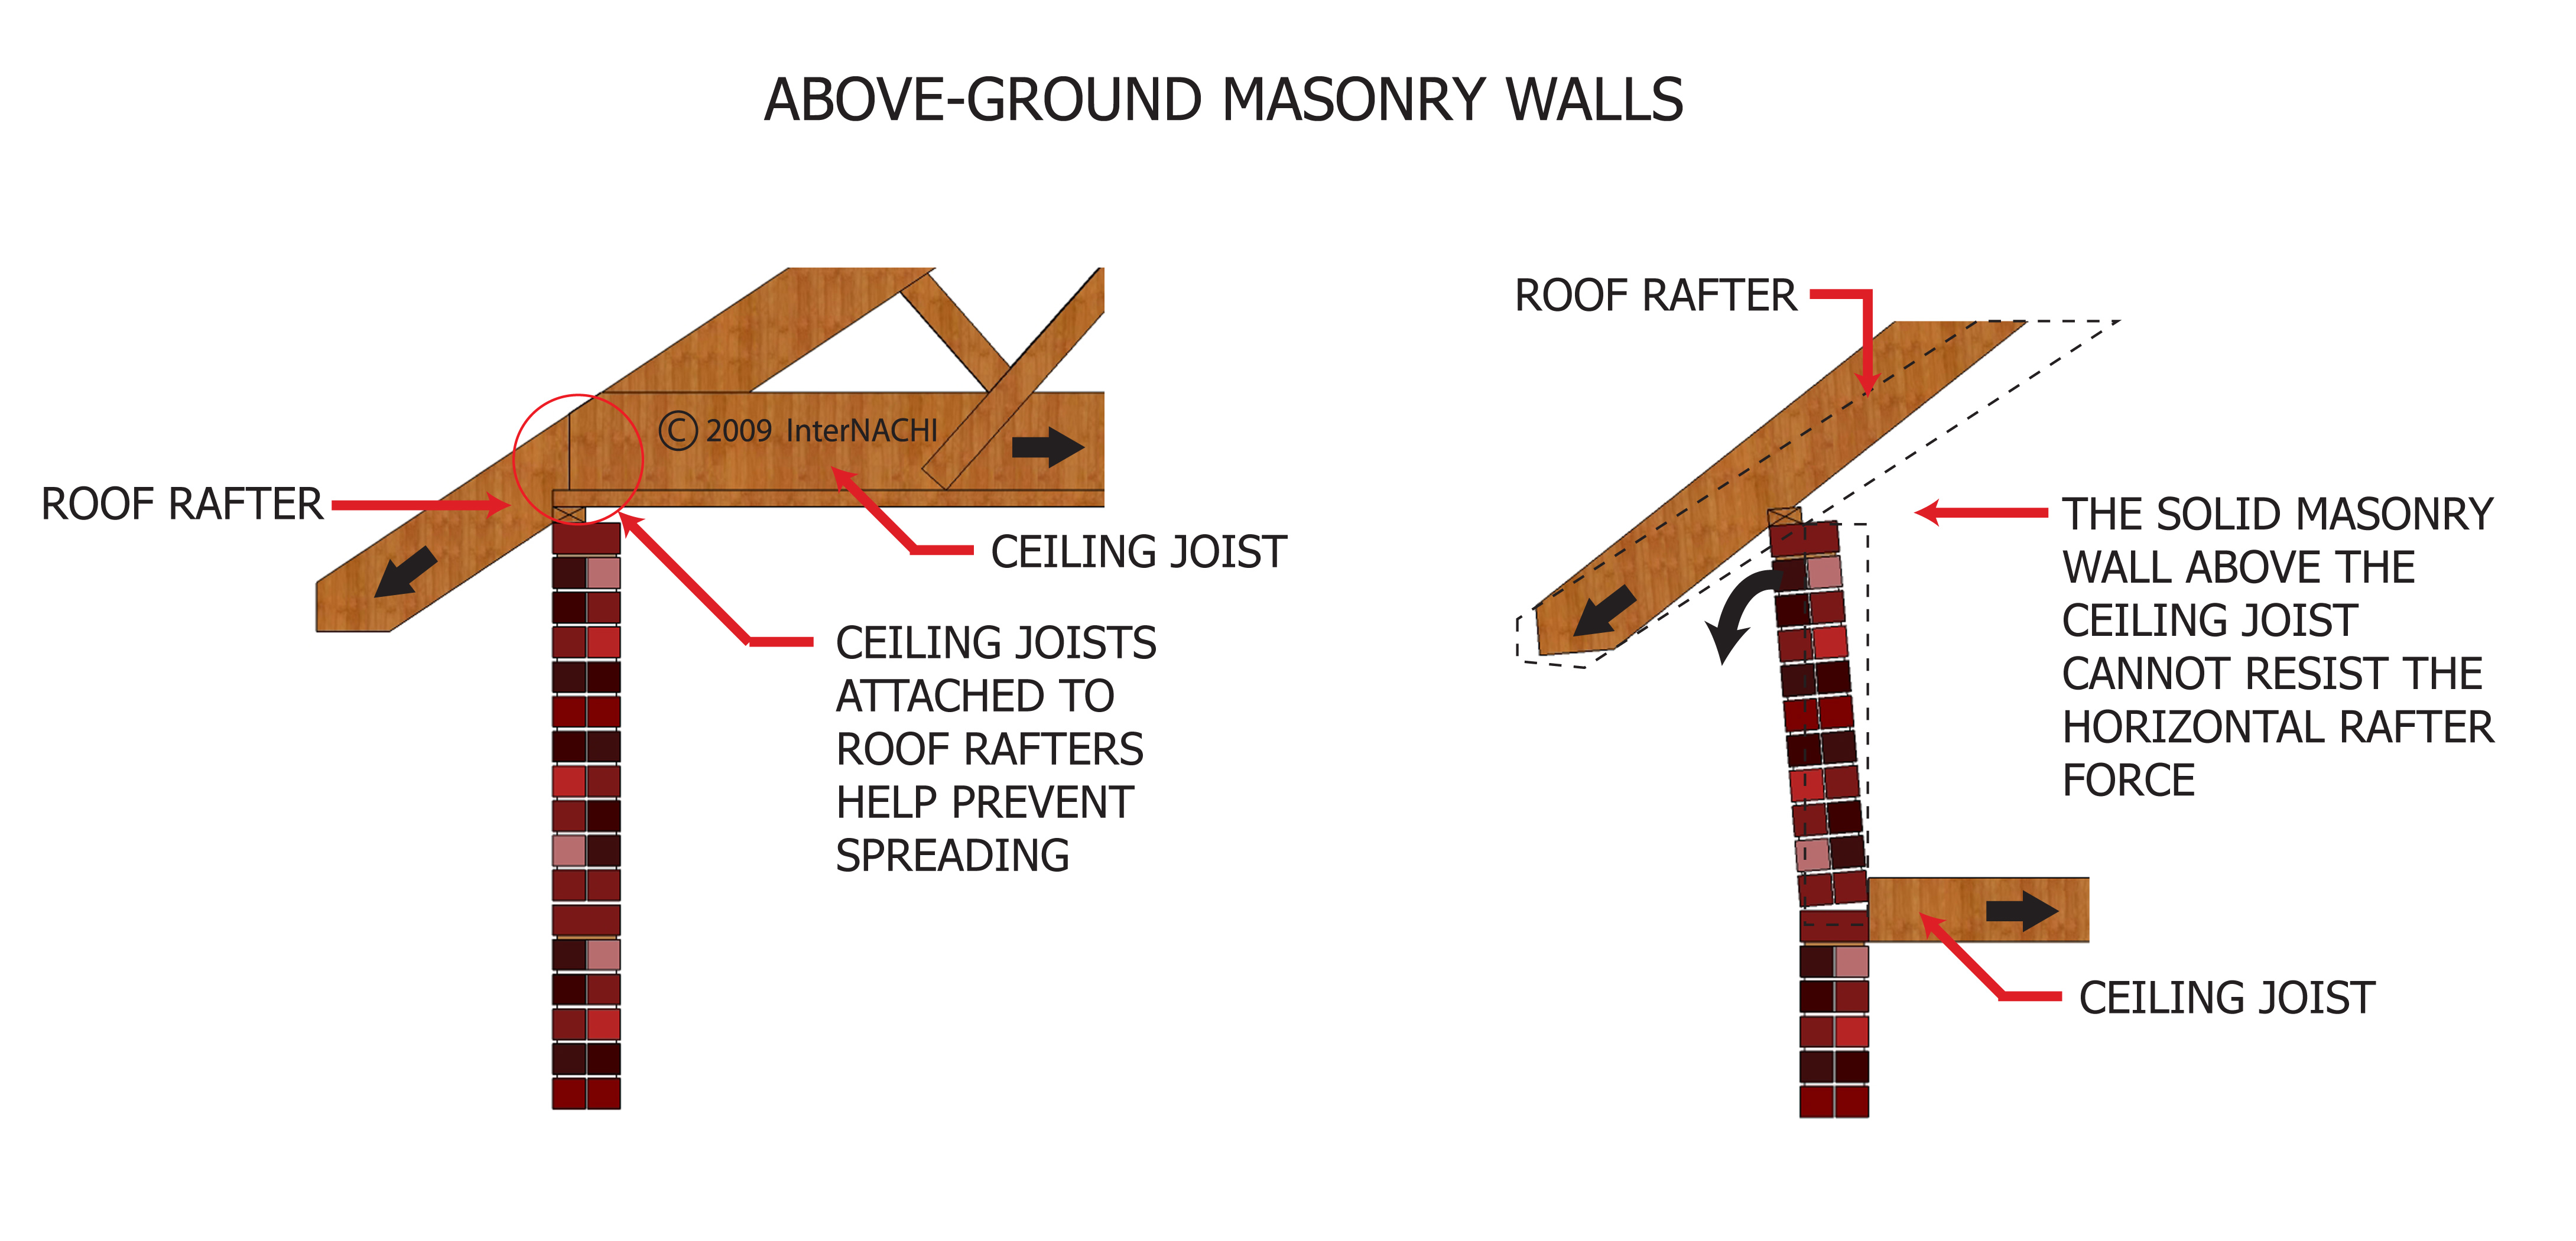 Above-ground masonry walls.